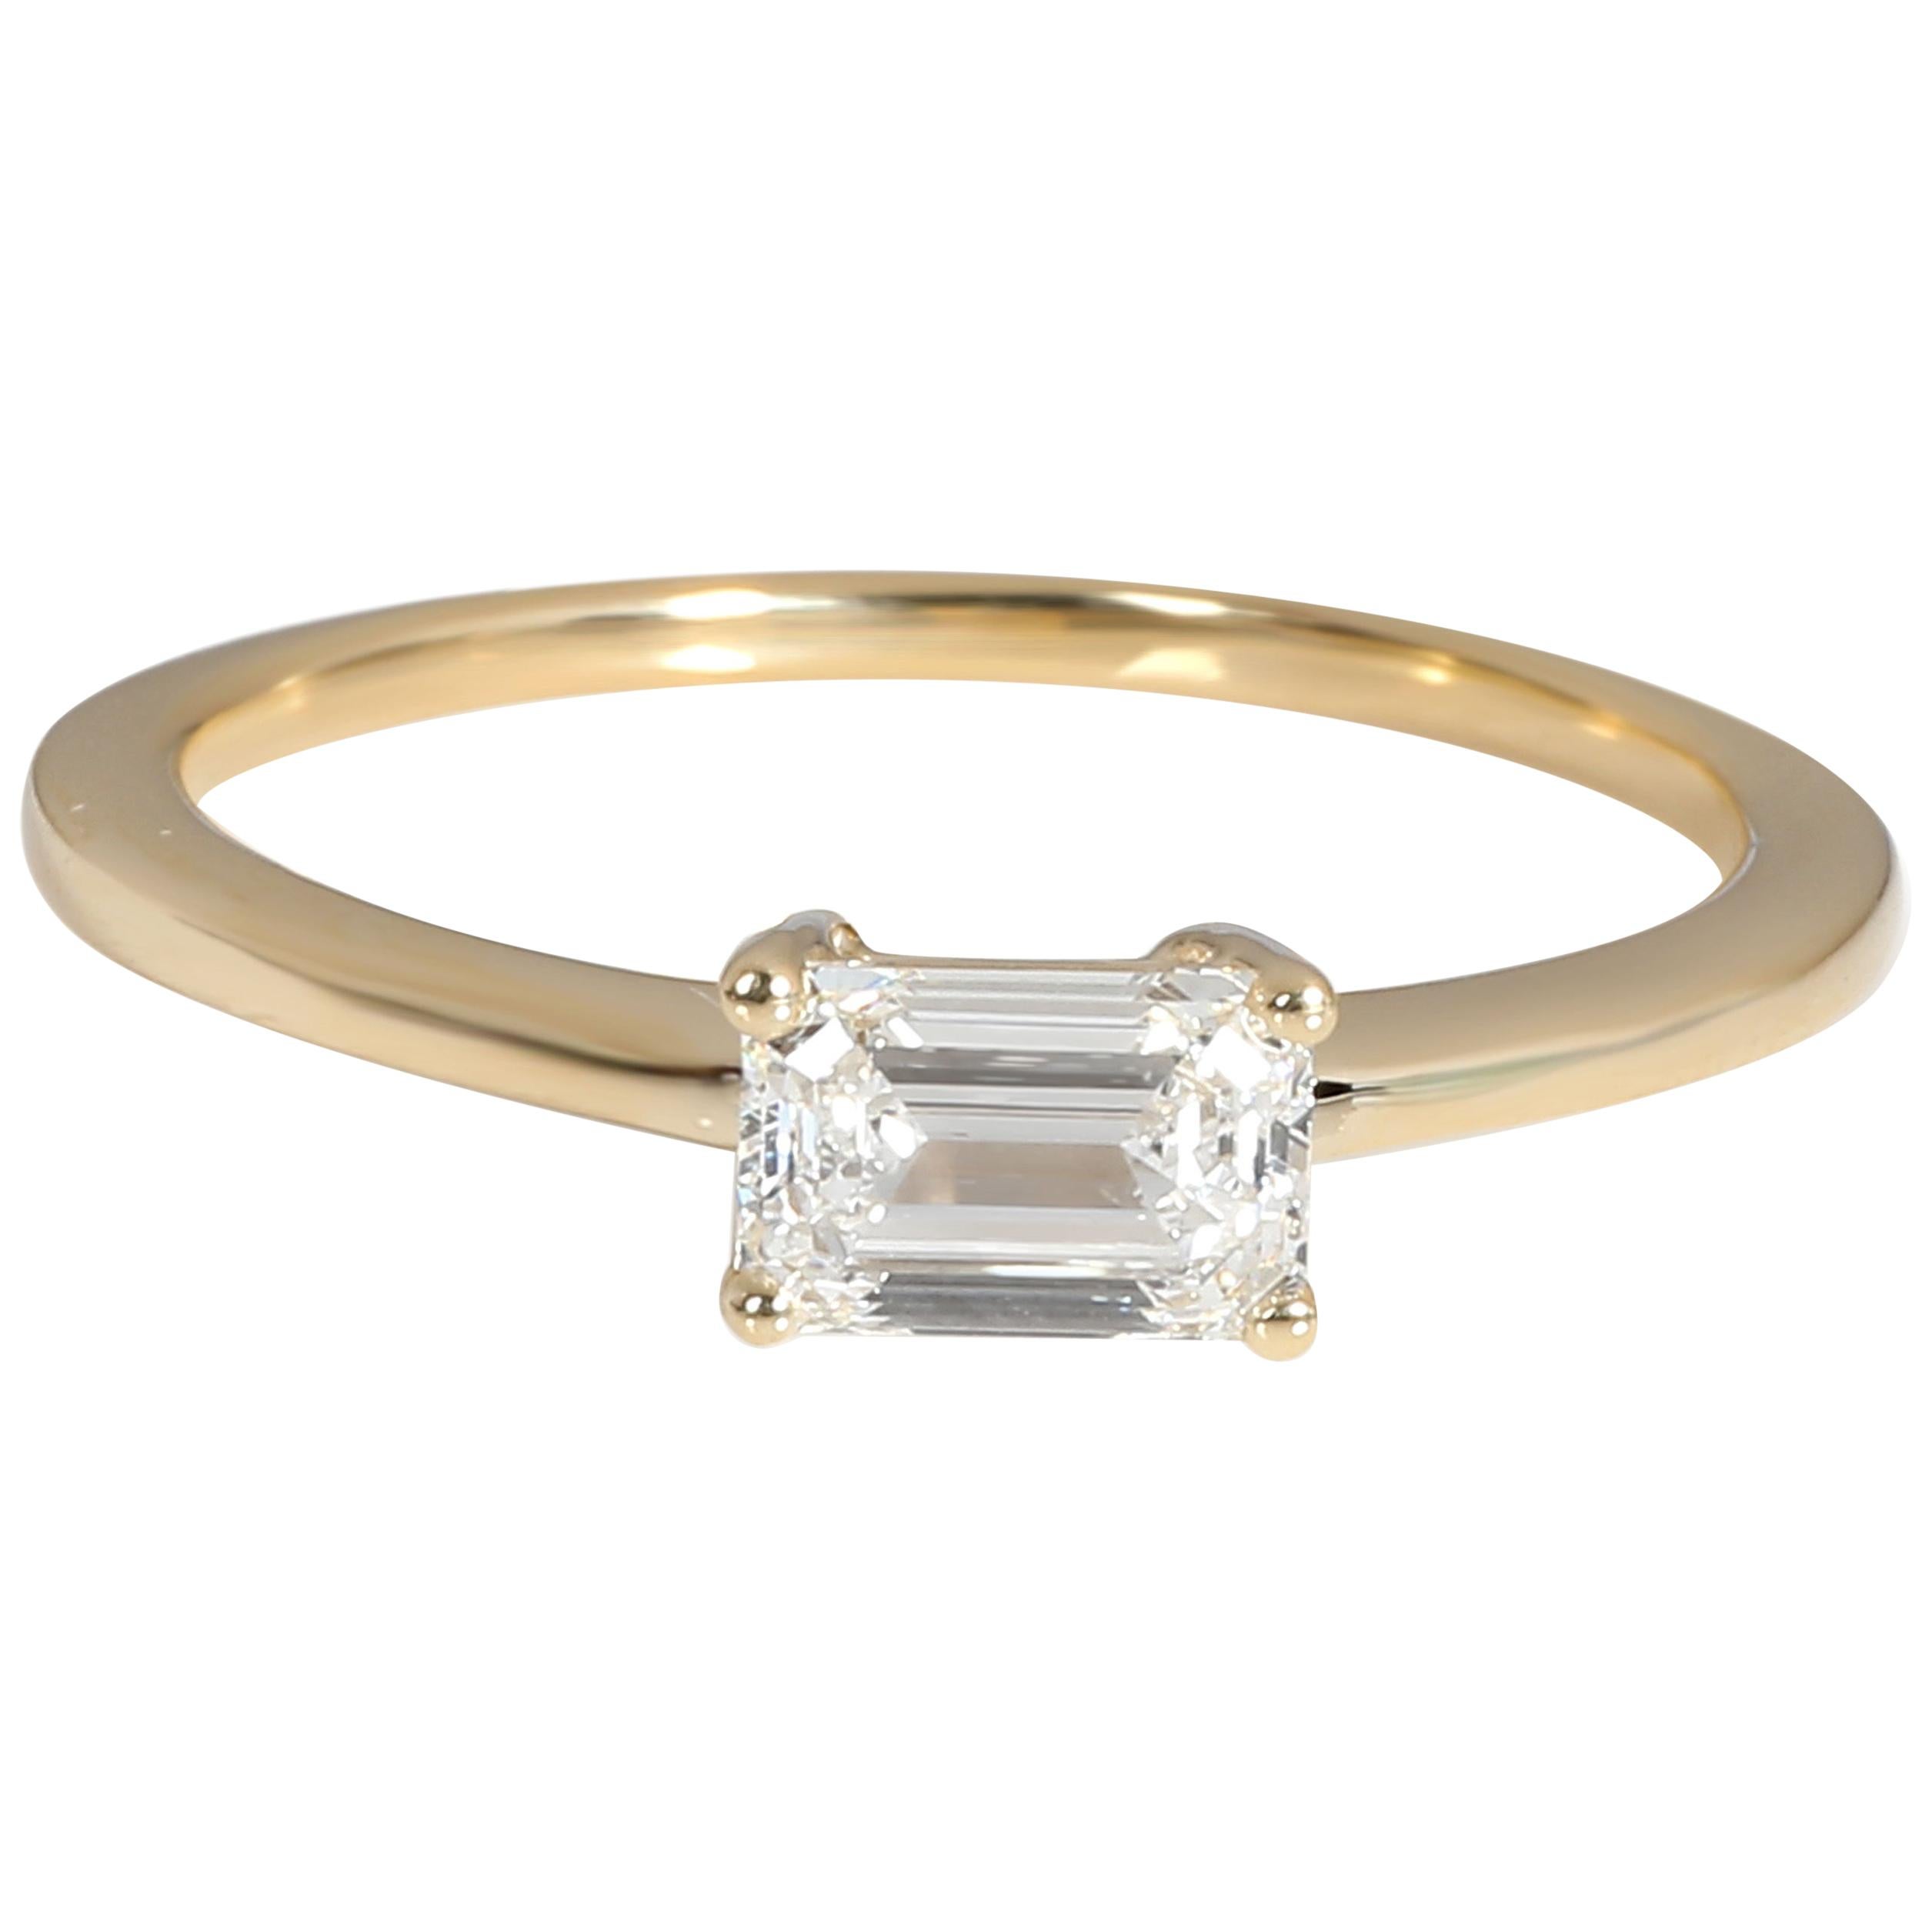 GIA Certified Emerald Cut Diamond Ring in 14K Yellow Gold '0.61 Carat F/SI1'